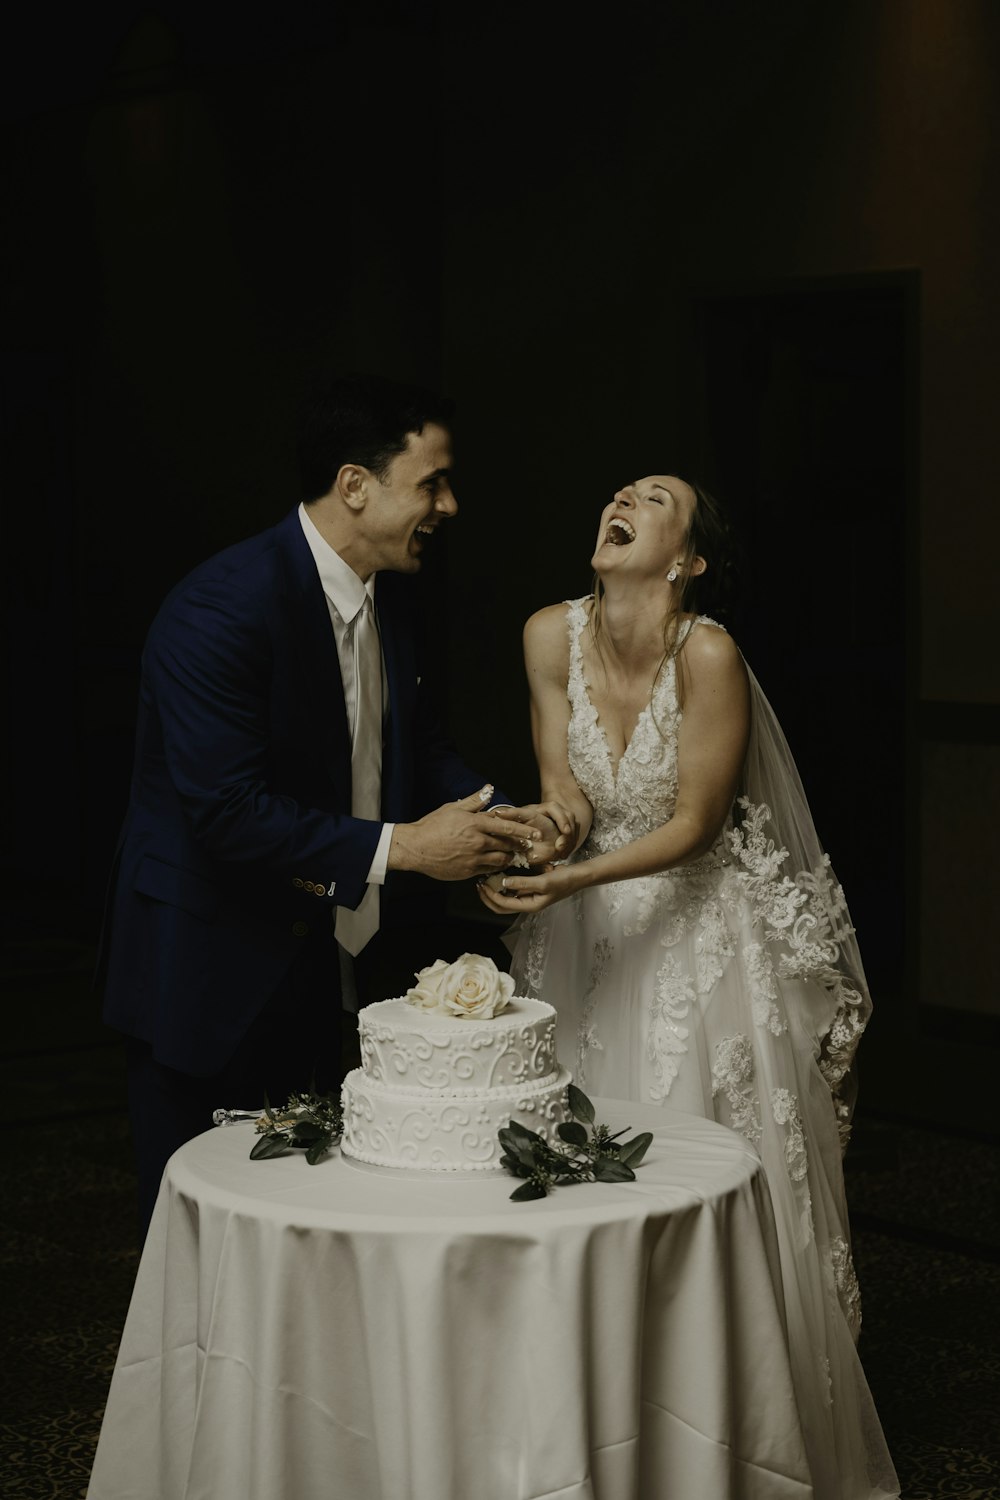 Ein Mann und eine Frau, die eine Hochzeitstorte anschneiden